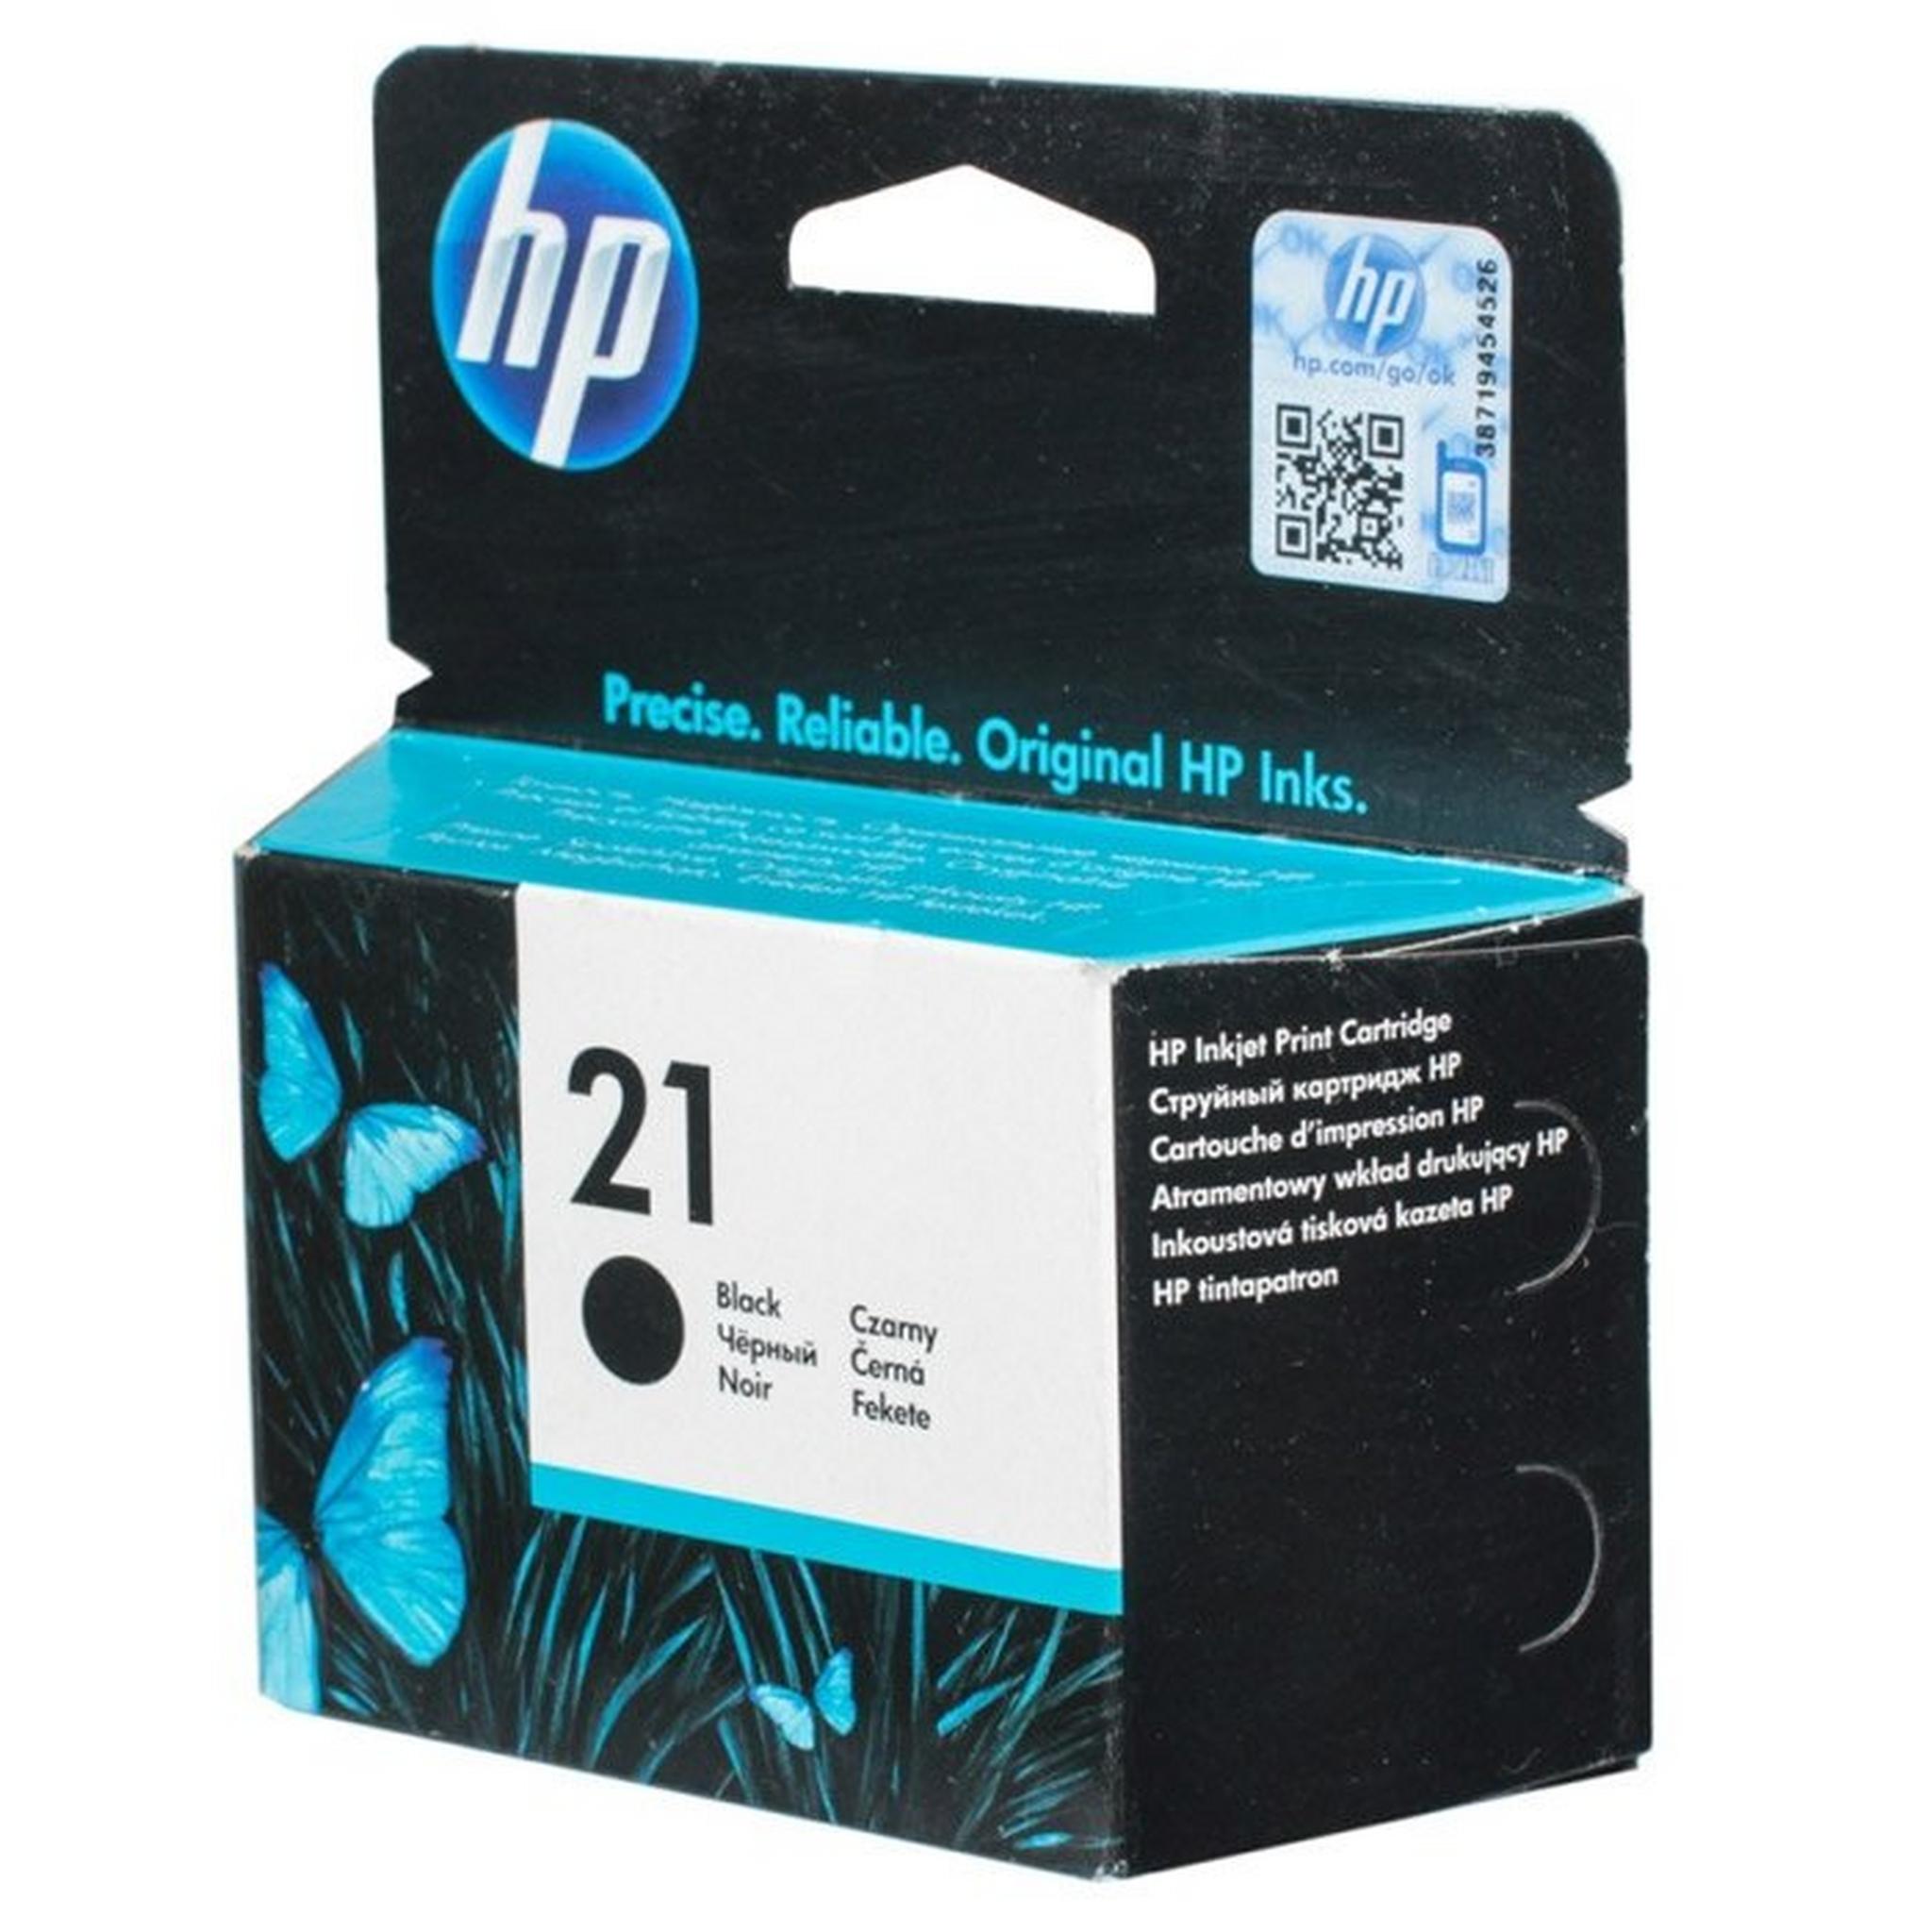 HP Ink 21 Black Ink